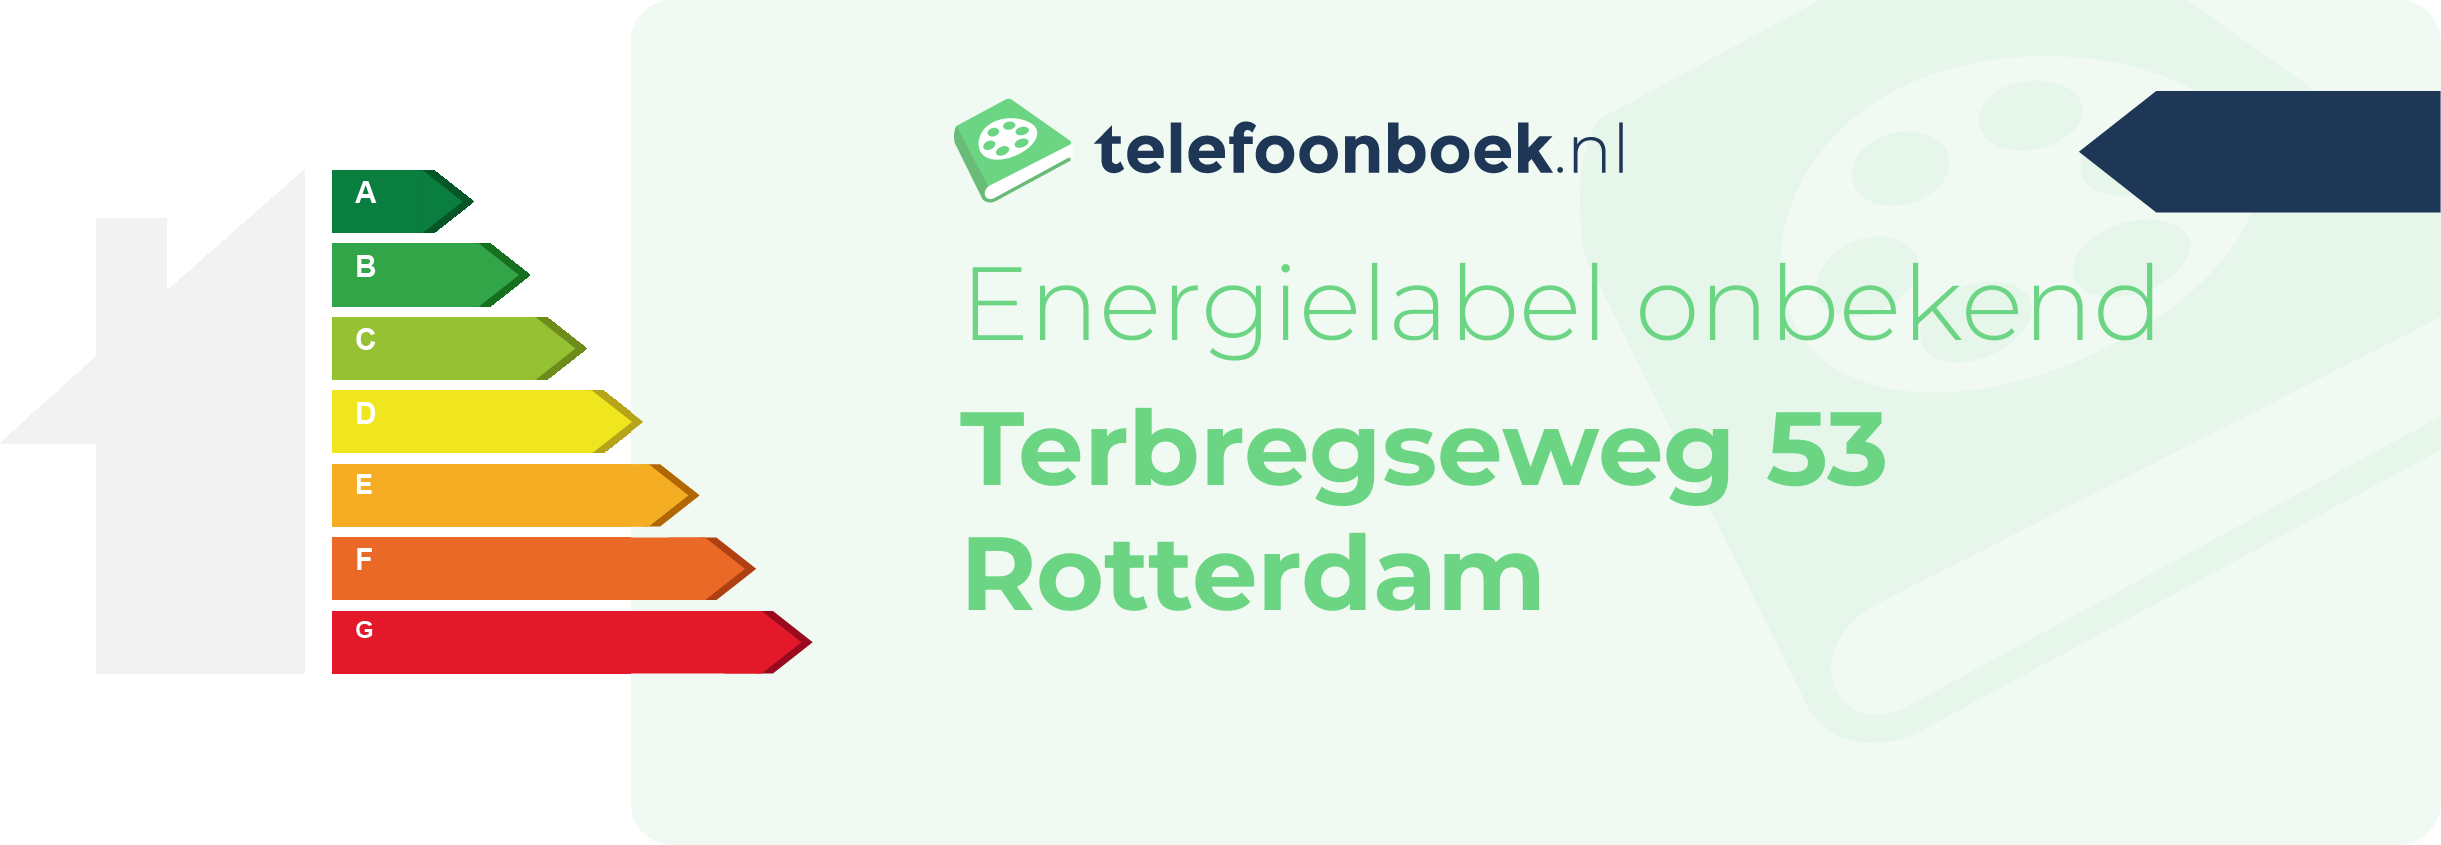 Energielabel Terbregseweg 53 Rotterdam